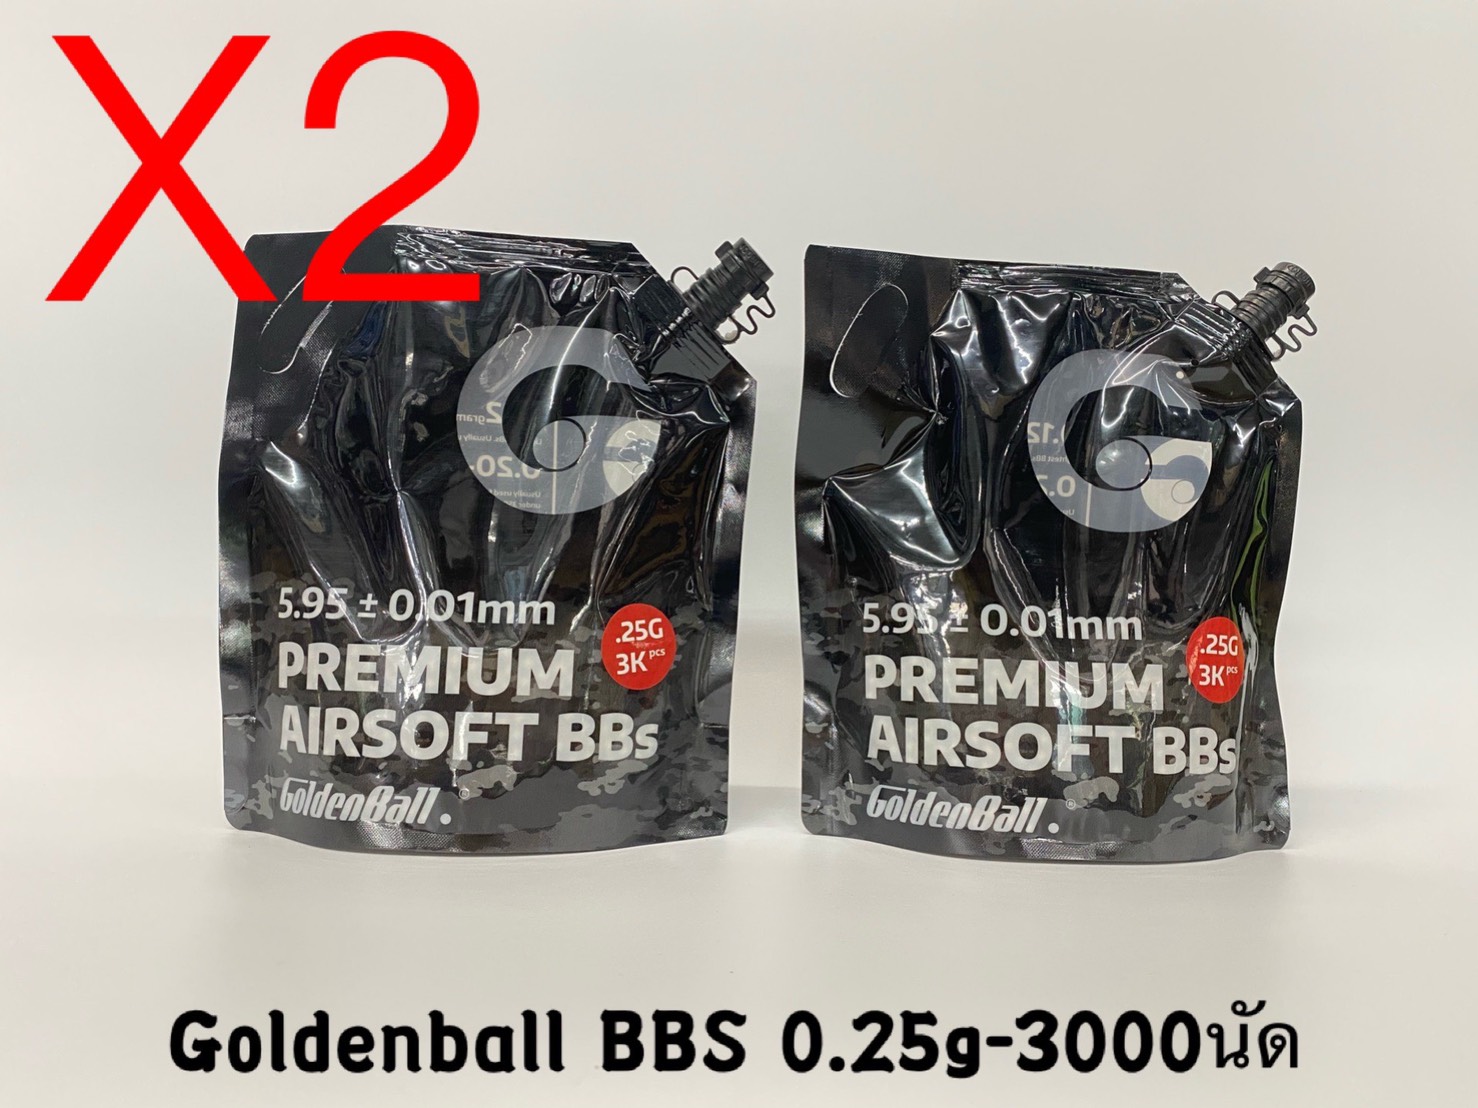 ซื้อ2ถูกกว่า ลูกกระสุนปืนบีบีกัน Goldenball Premium Airsoft BBS 0.20g/0.25g 4,000/3,000นัด จำนวน 2 ถุง